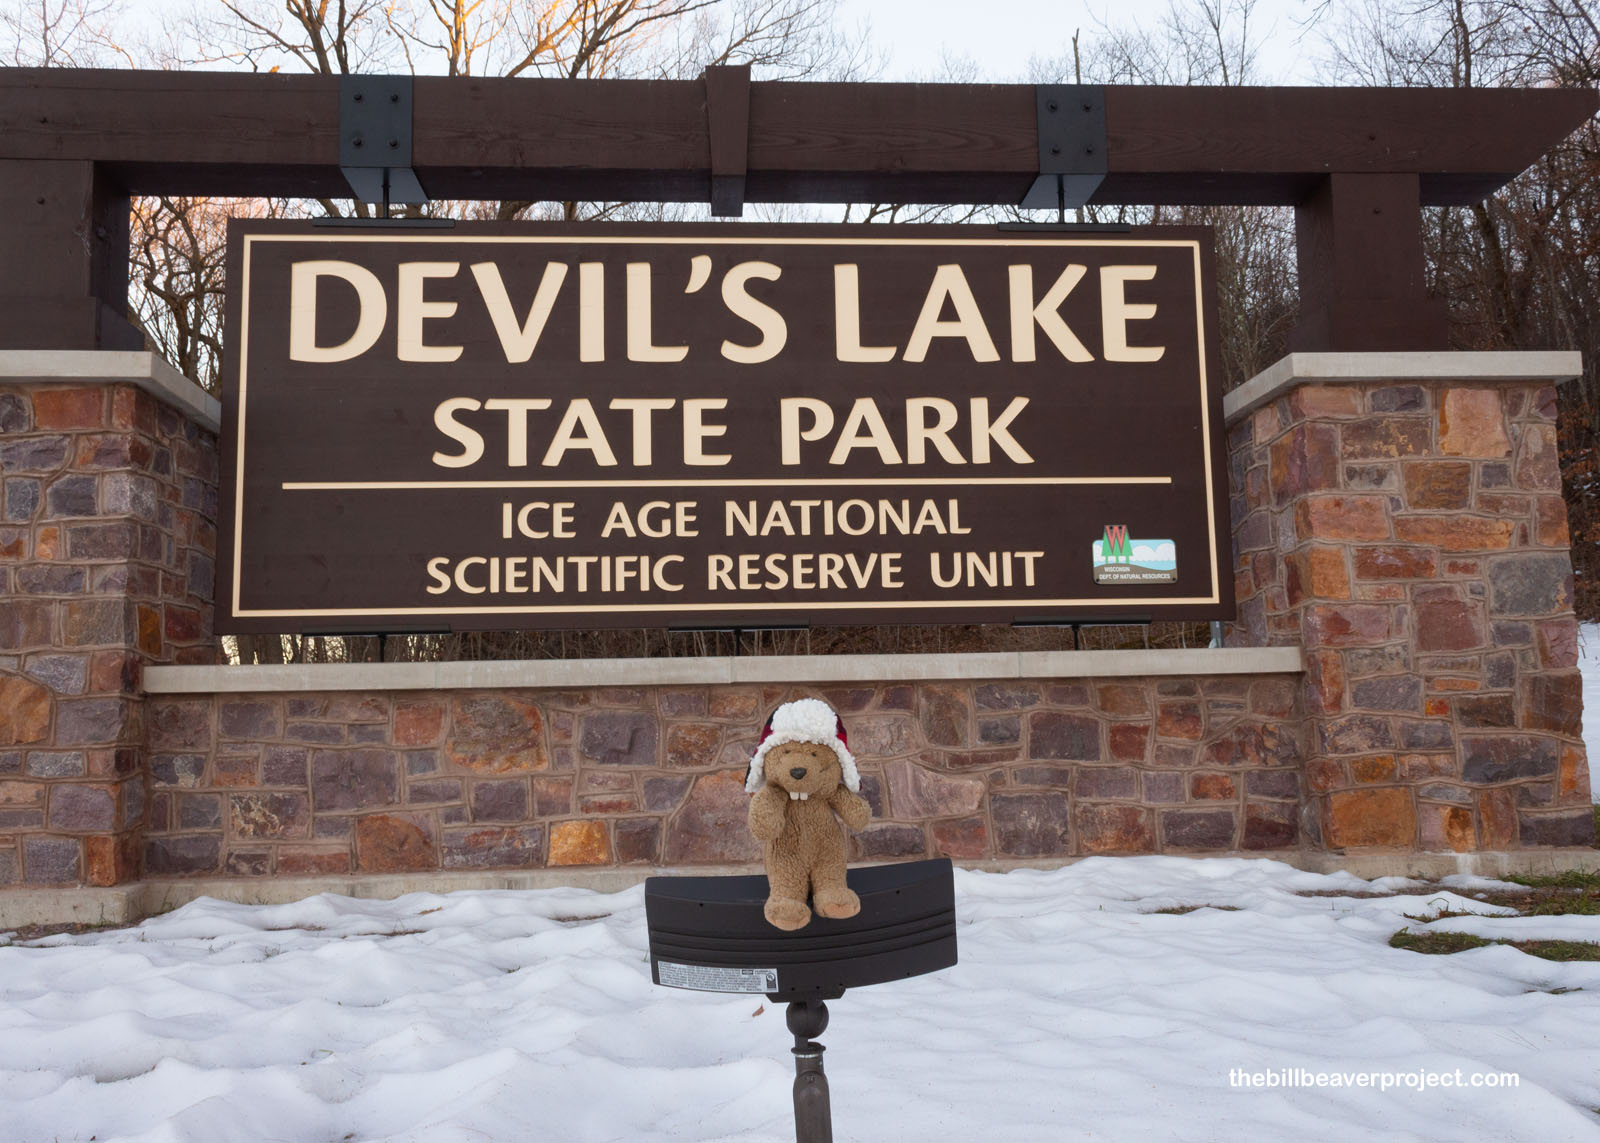 Devil's Lake State Park